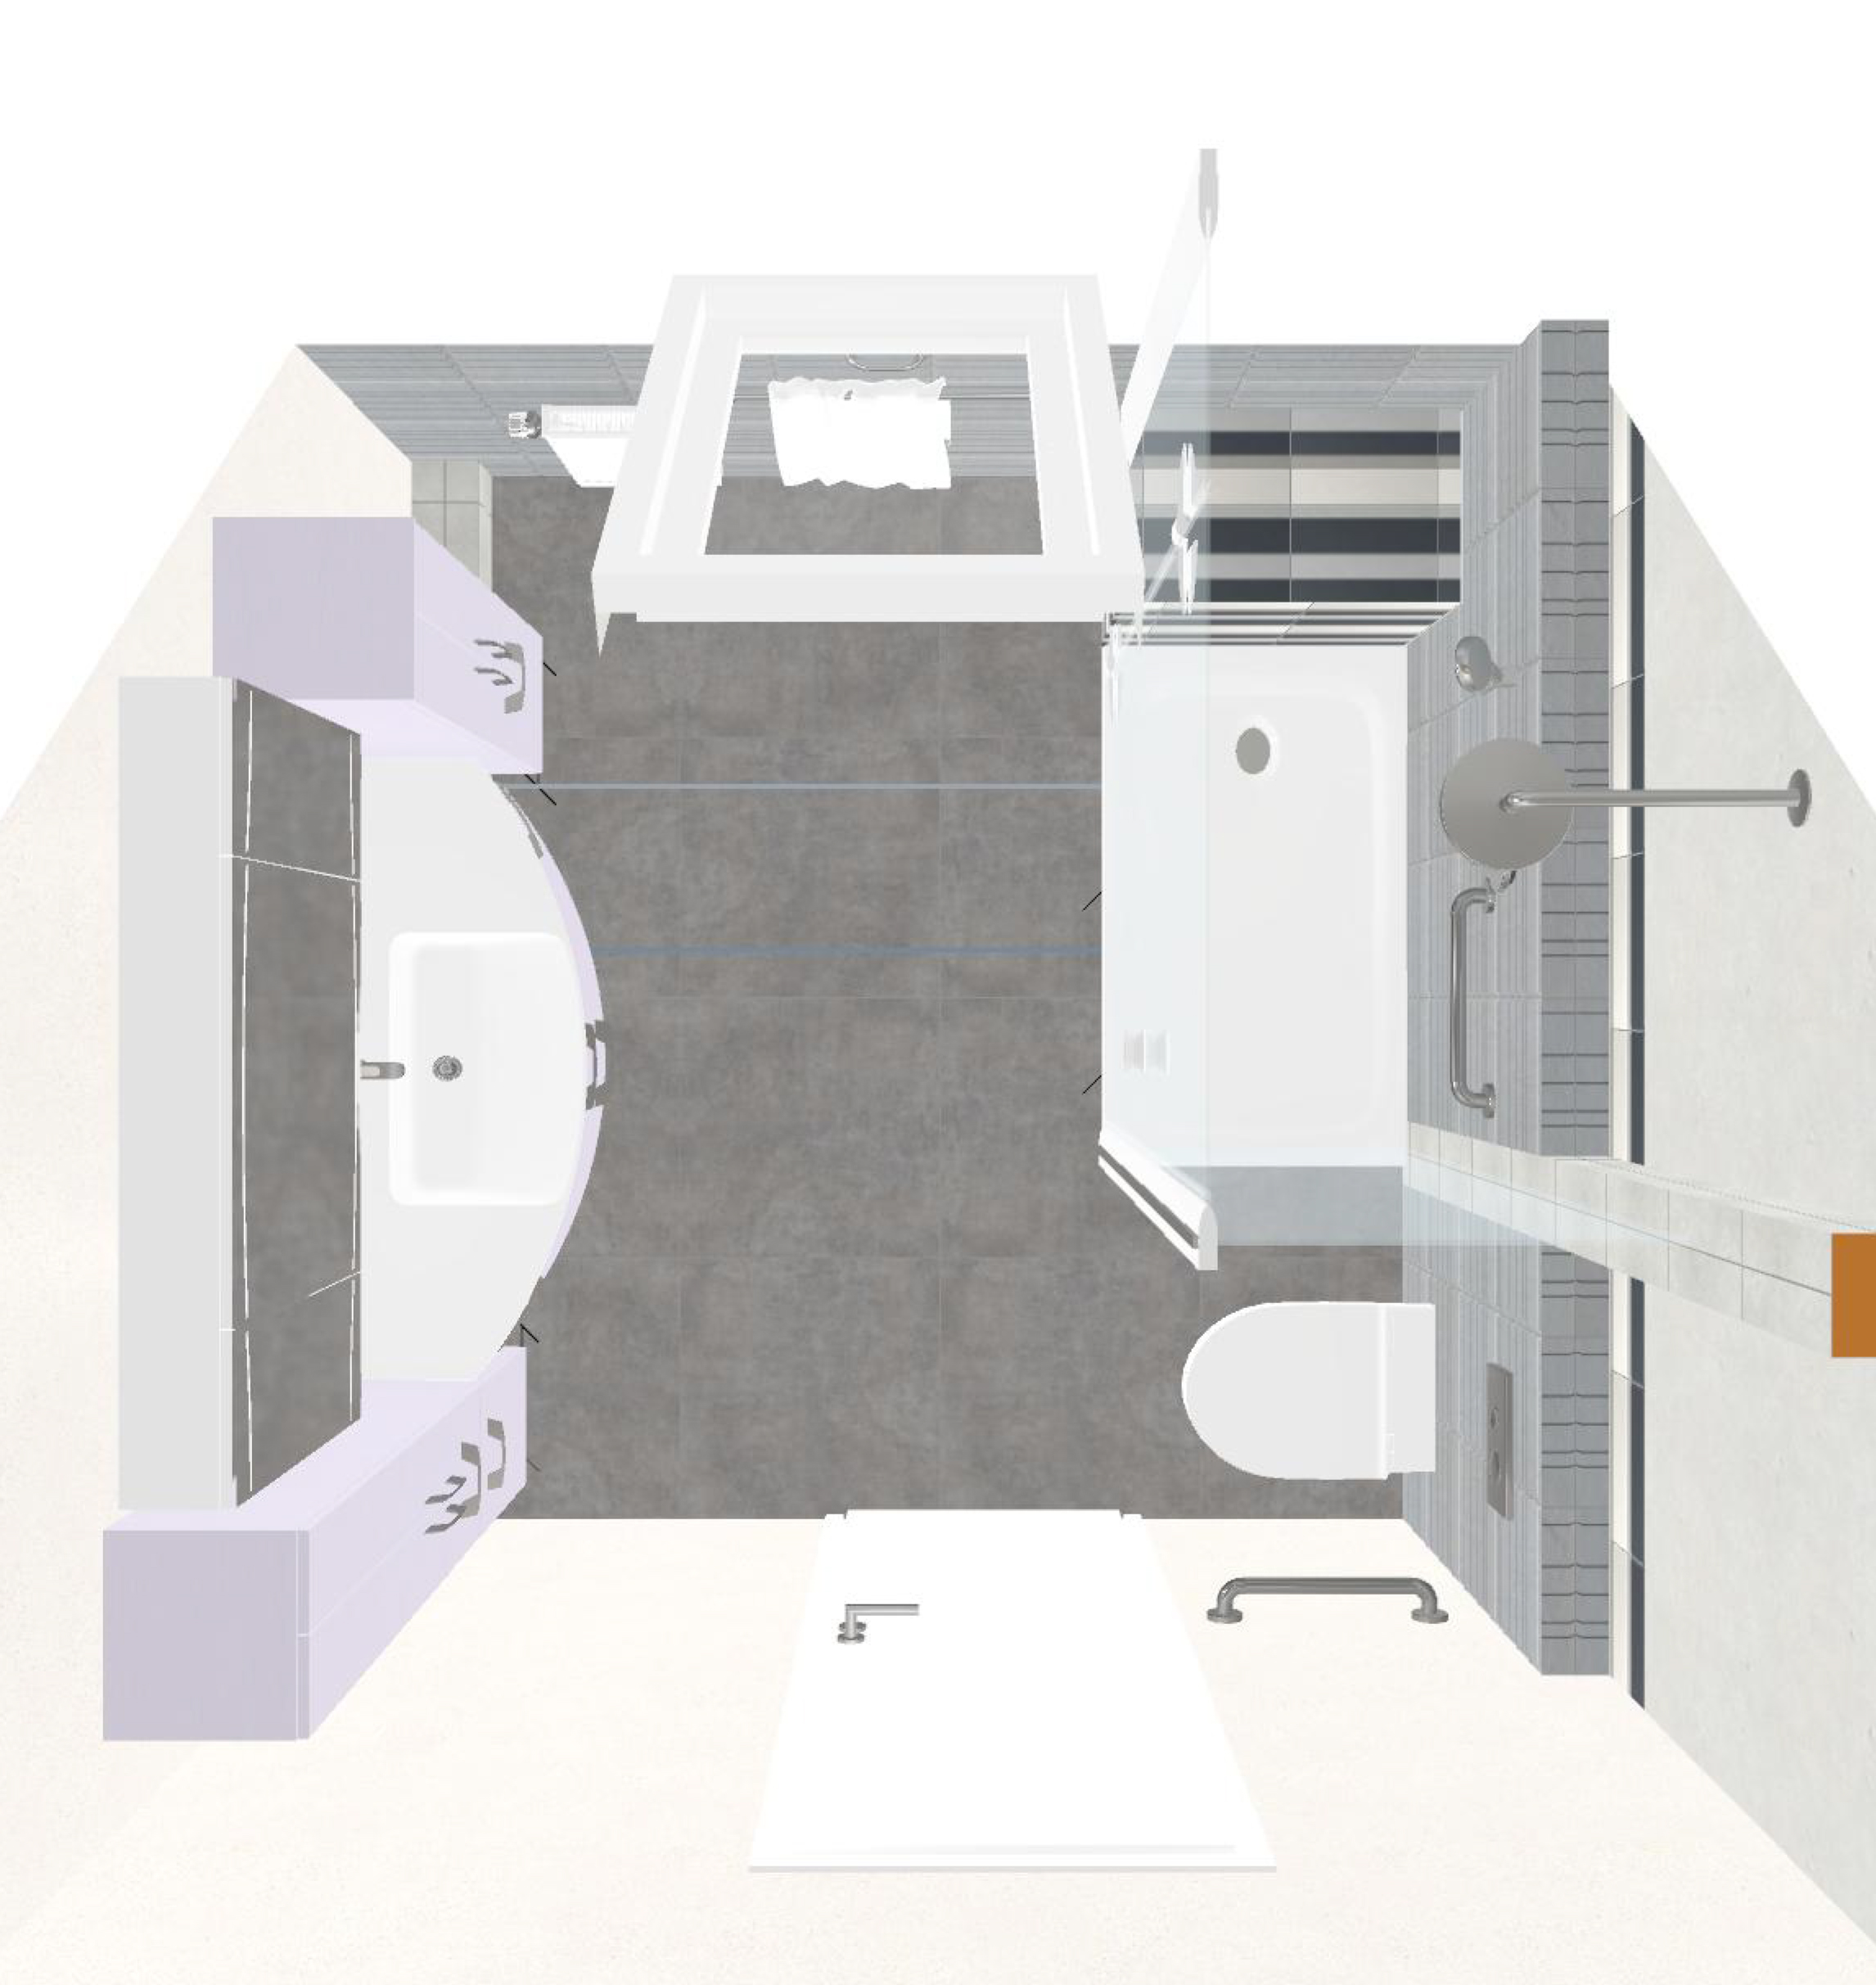 projet renovation salle bain baignoire douche mobilier plan 3d